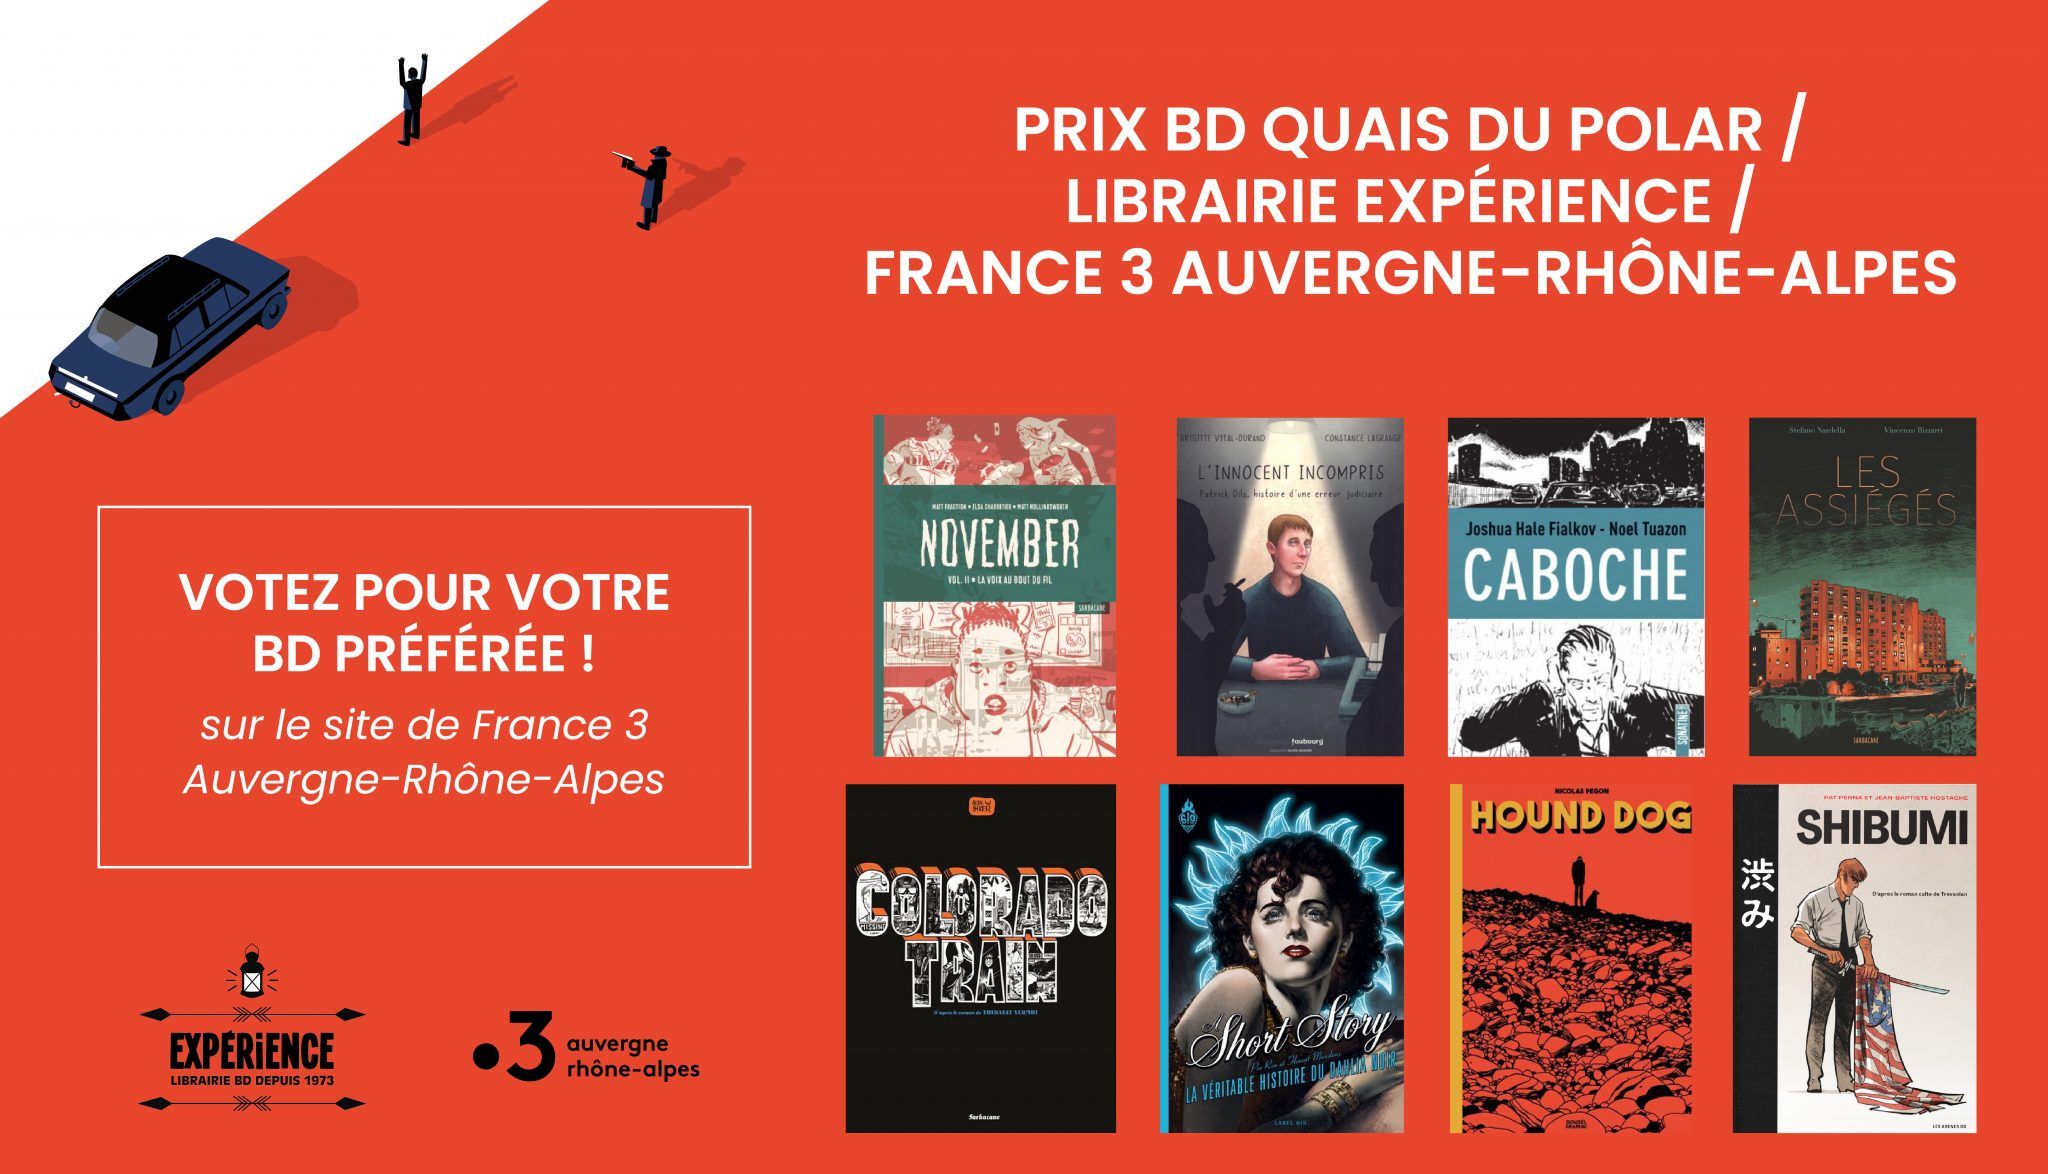 Prix Quais du polar / Expérience / France 3 Auvergne Rhône-Alpes